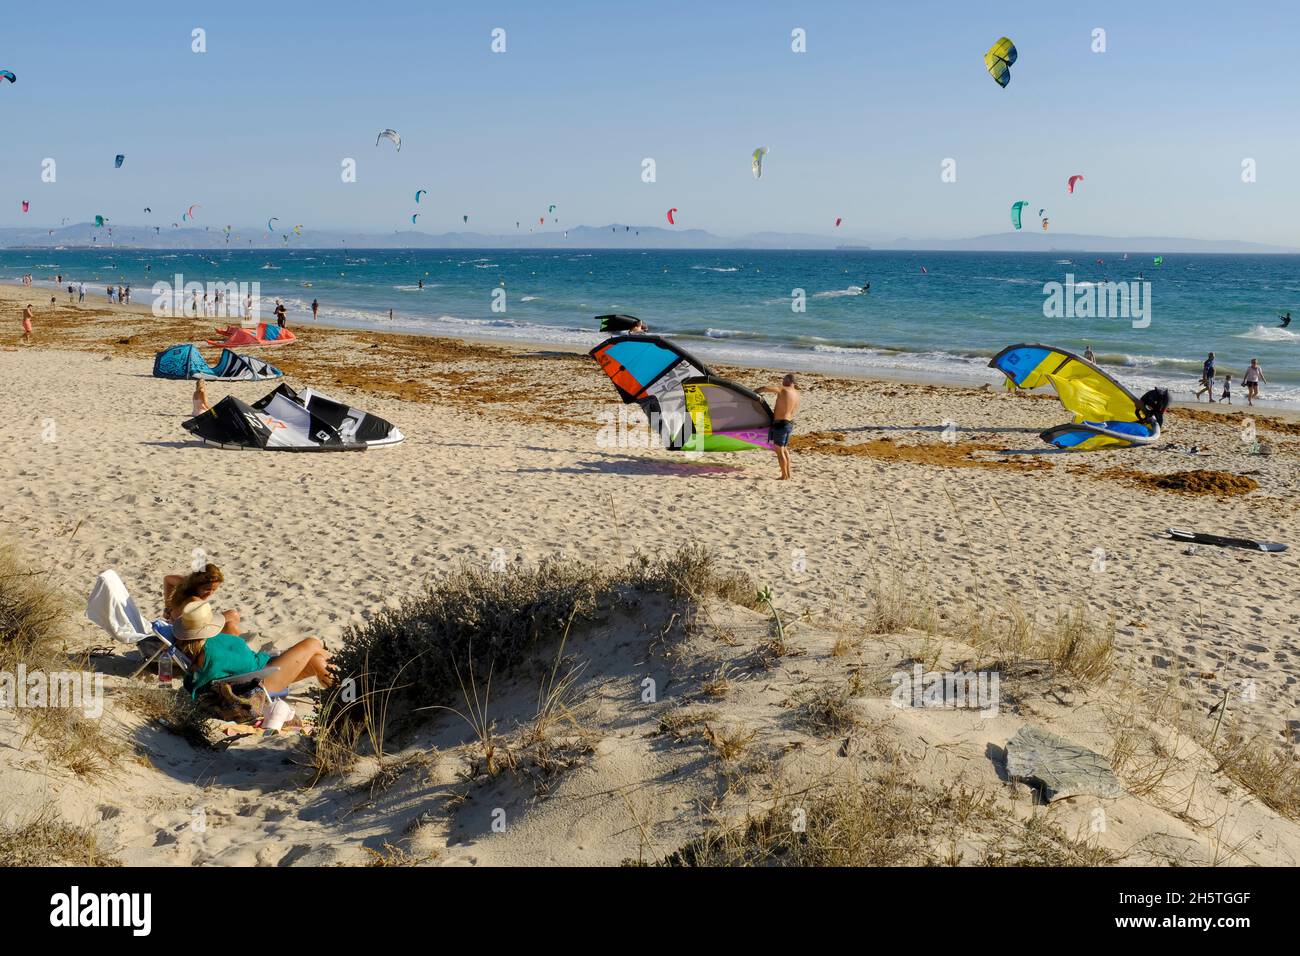 Kitesurfers preparando sus cometas y bañistas de sol en la playa de Los Lances.Tarifa, Costa de la Luz, Provincia de Cádiz, Andalucía, España Foto de stock